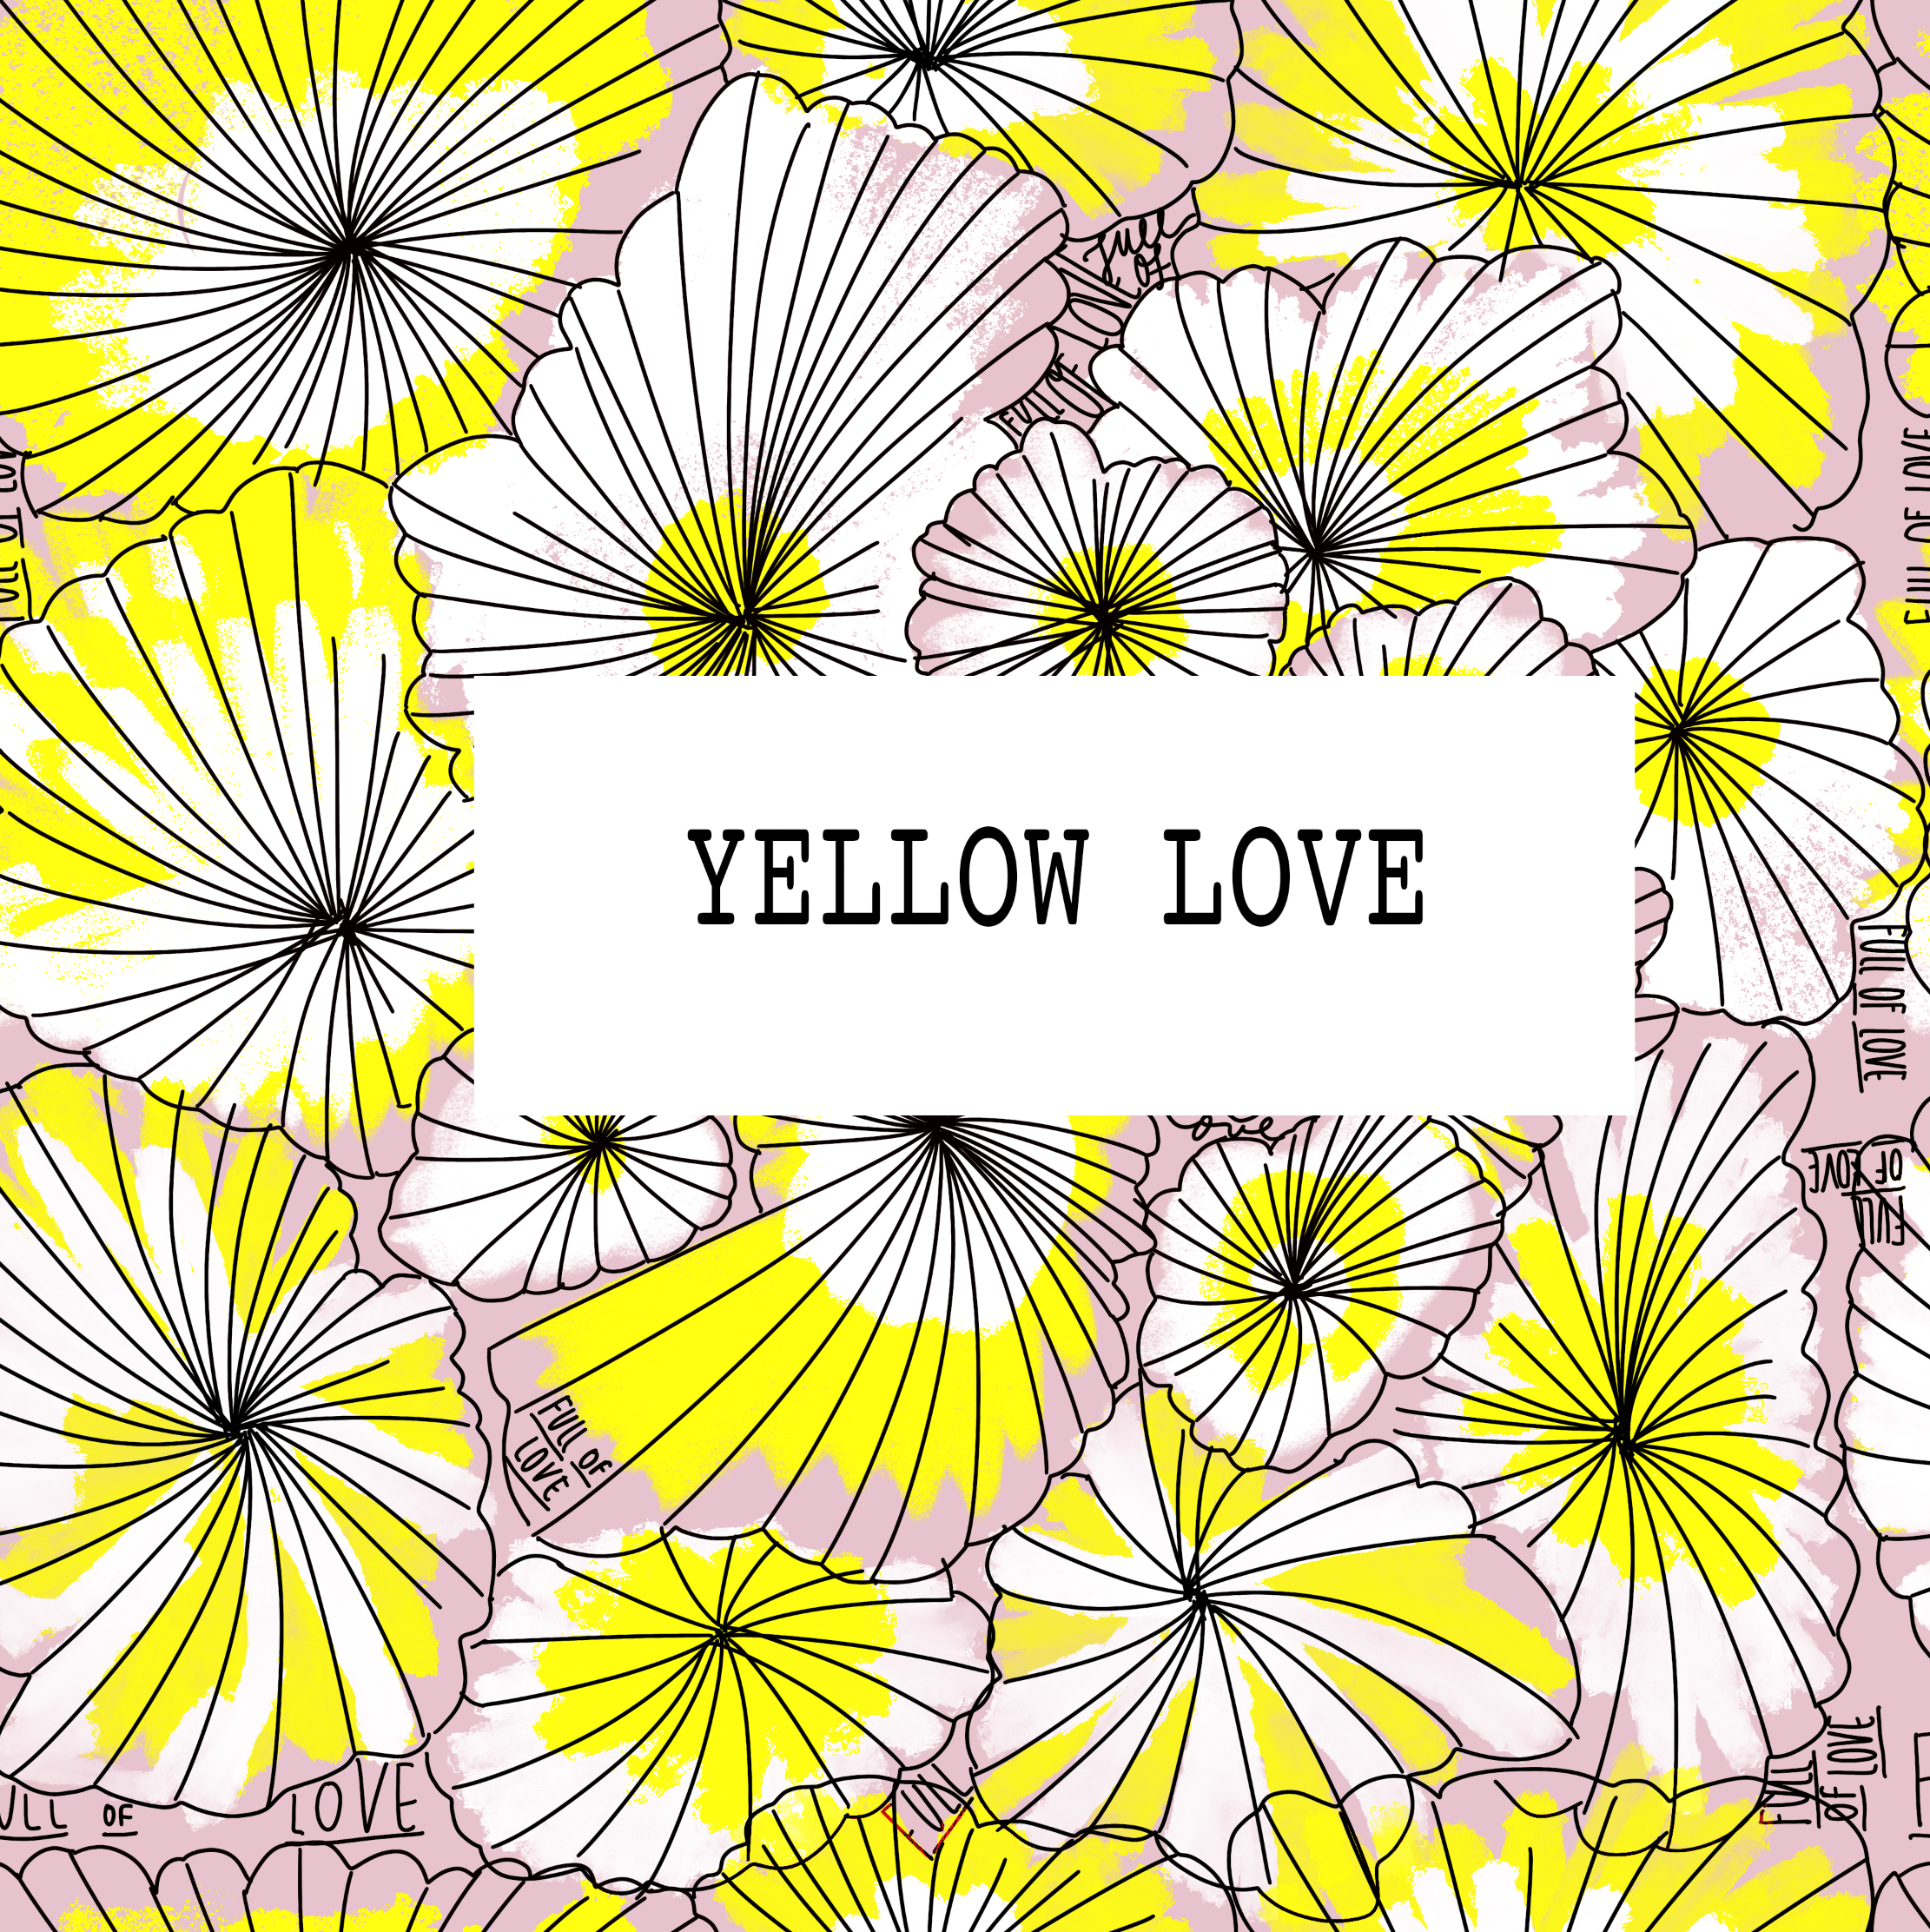 Yellow Love